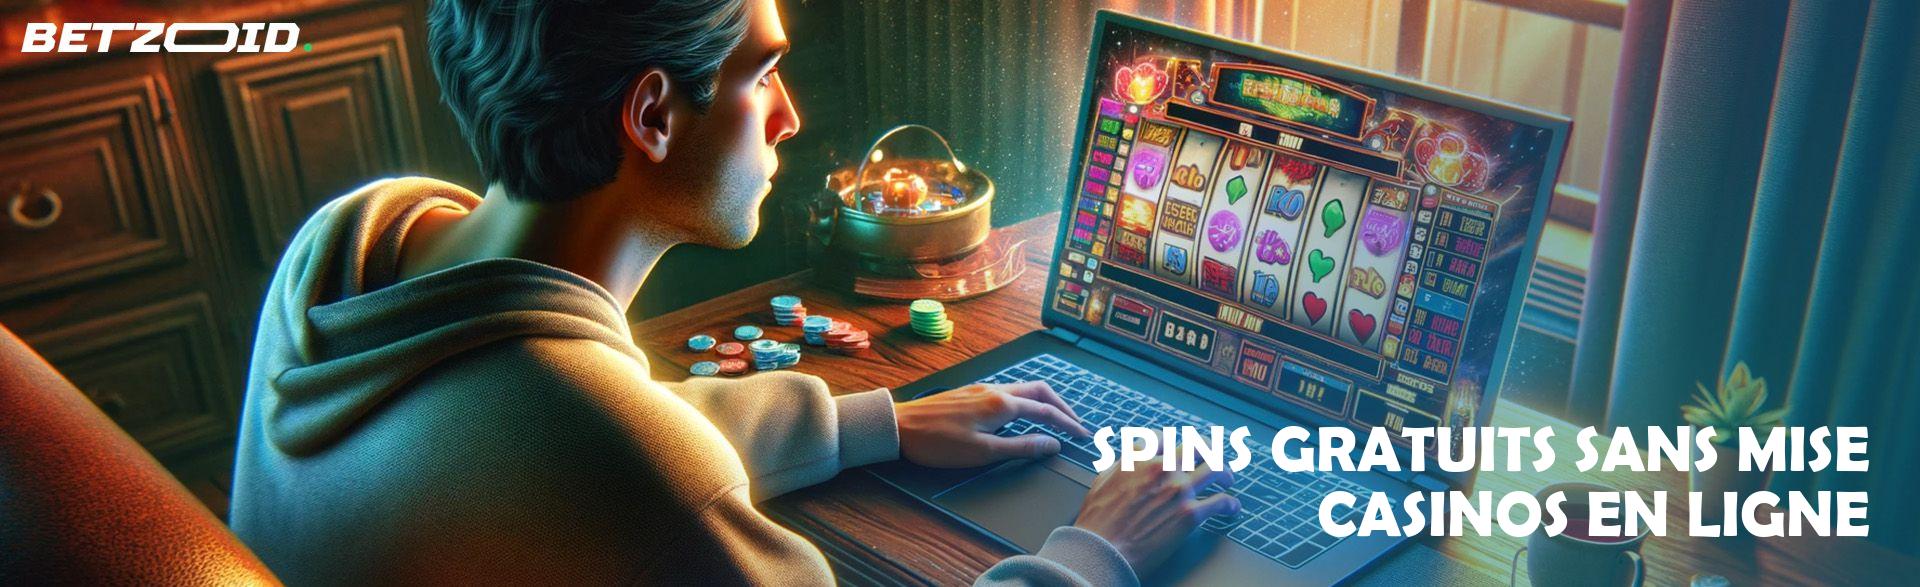 Spins Gratuits sans Mise Casinos en Ligne.